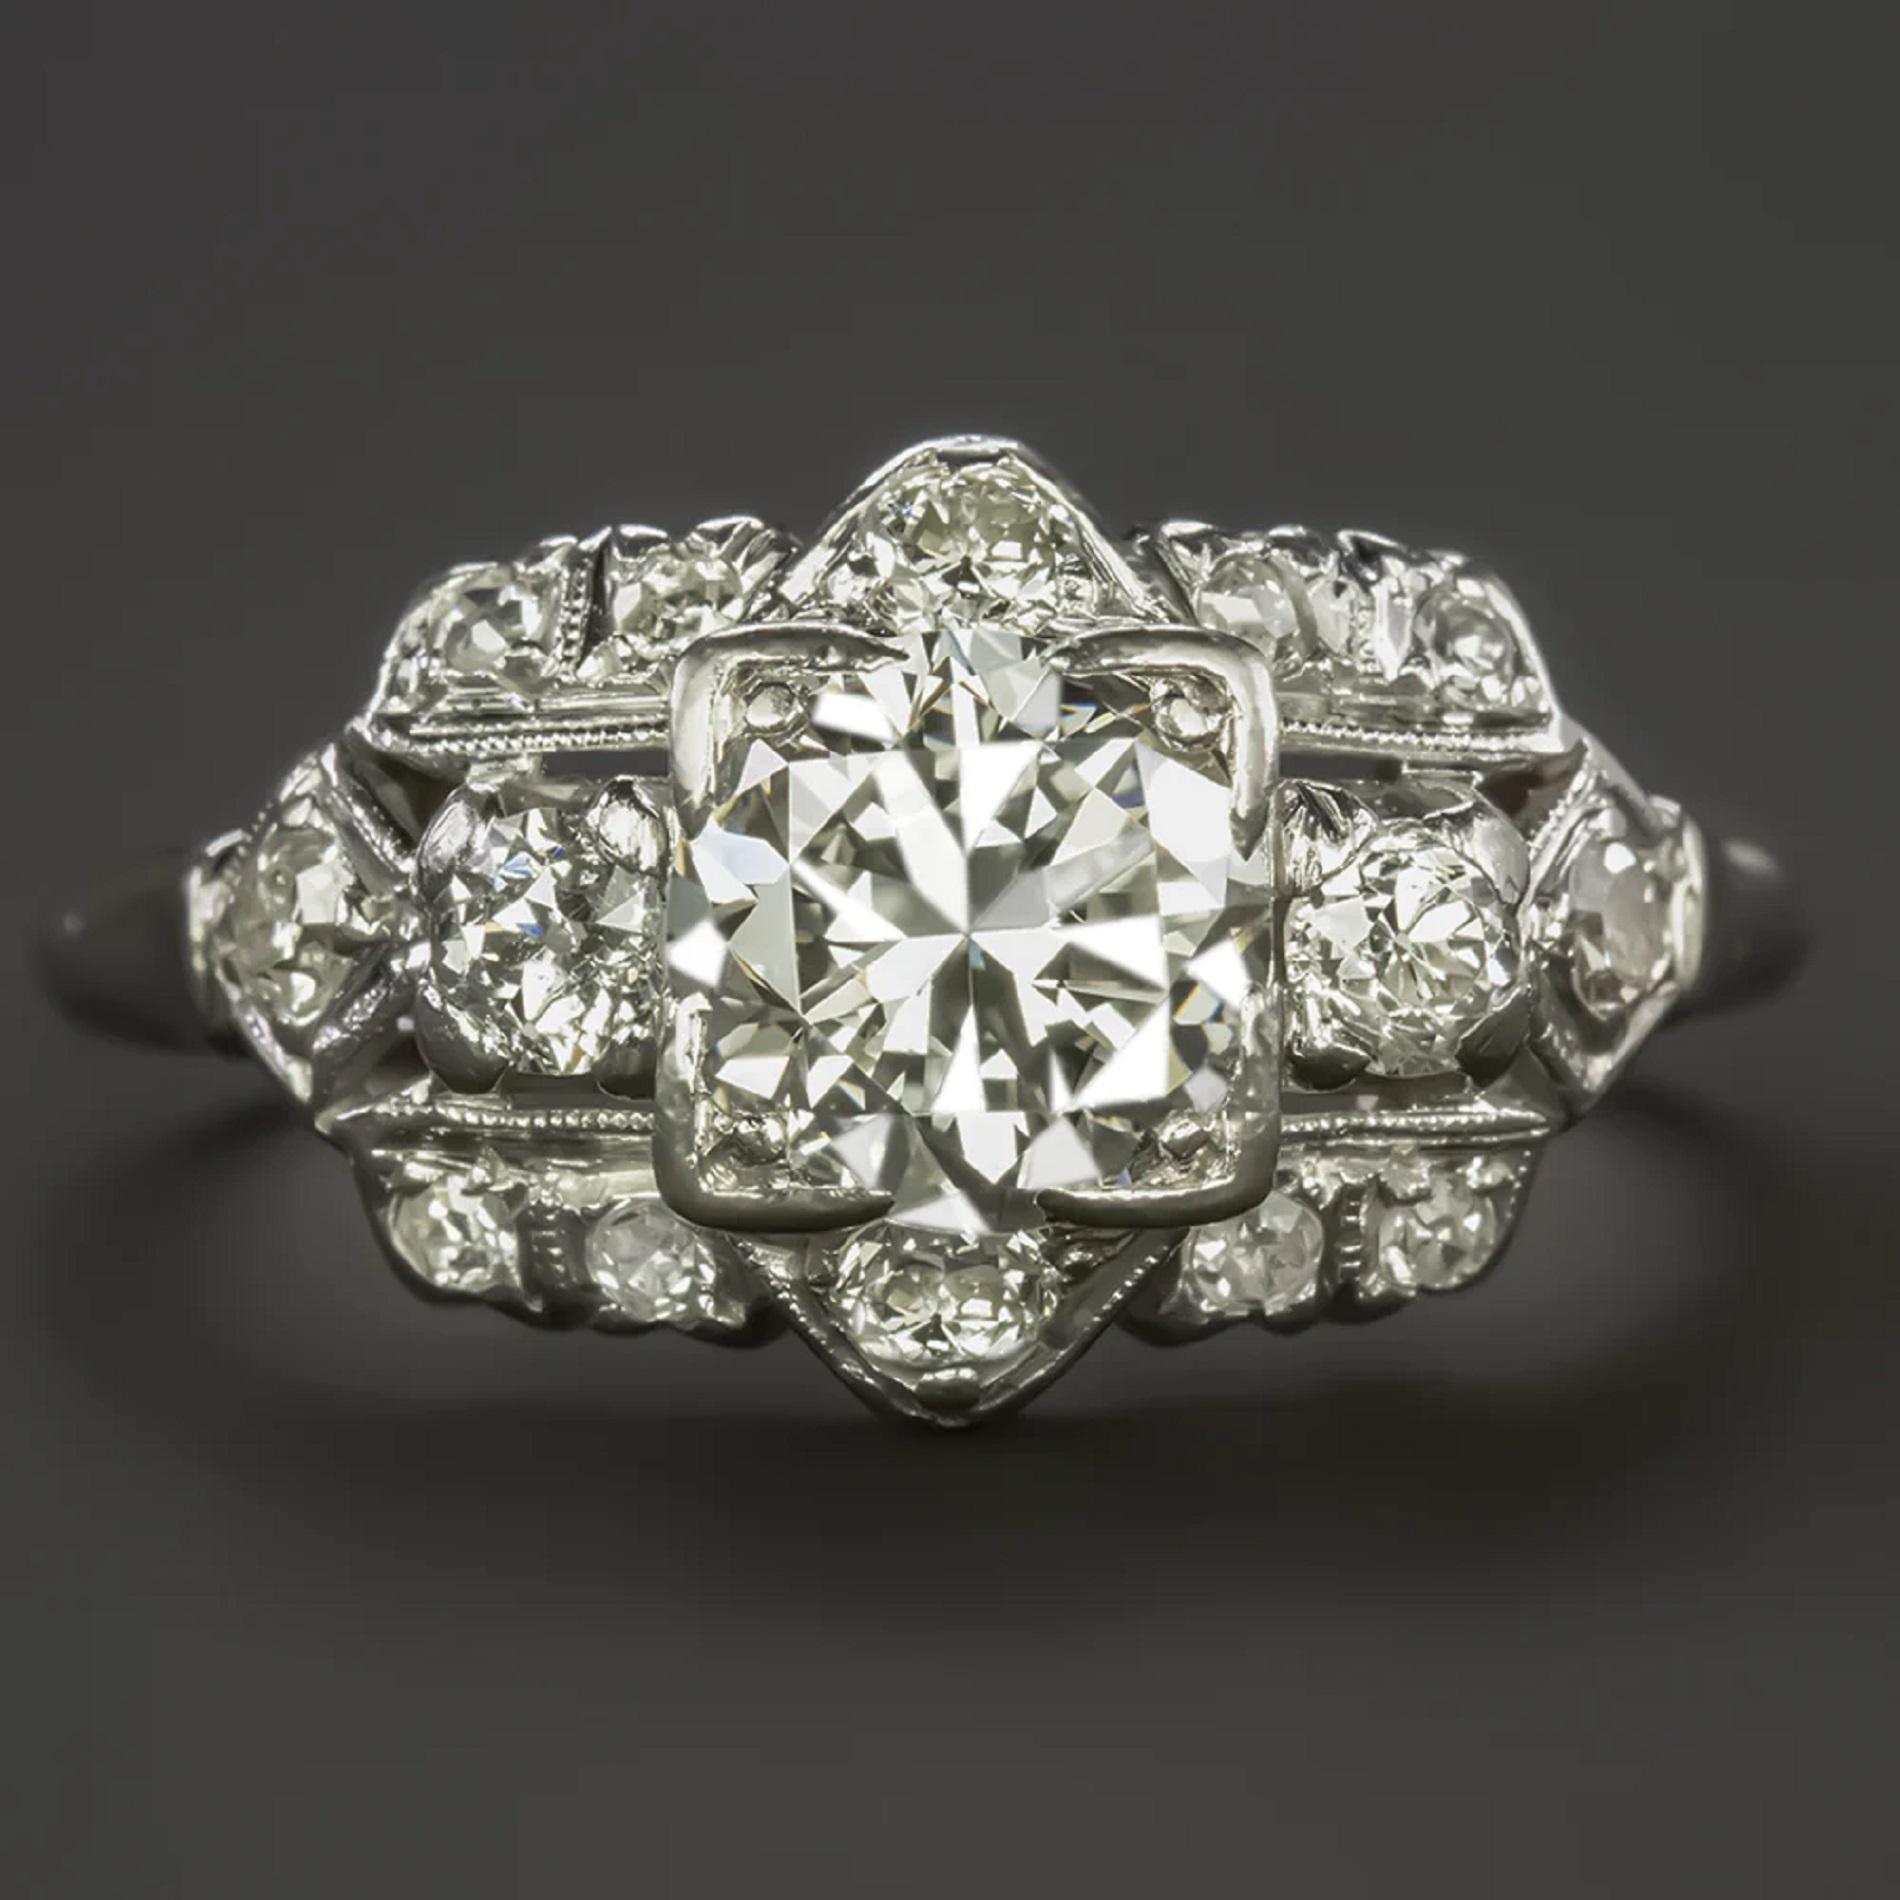 Cette magnifique bague vintage en diamant présente un design unique et élégant avec un magnifique diamant central de 1 carat de haute qualité, des détails géométriques perfectionnés à la main et une face incrustée de diamants. Réalisée en platine